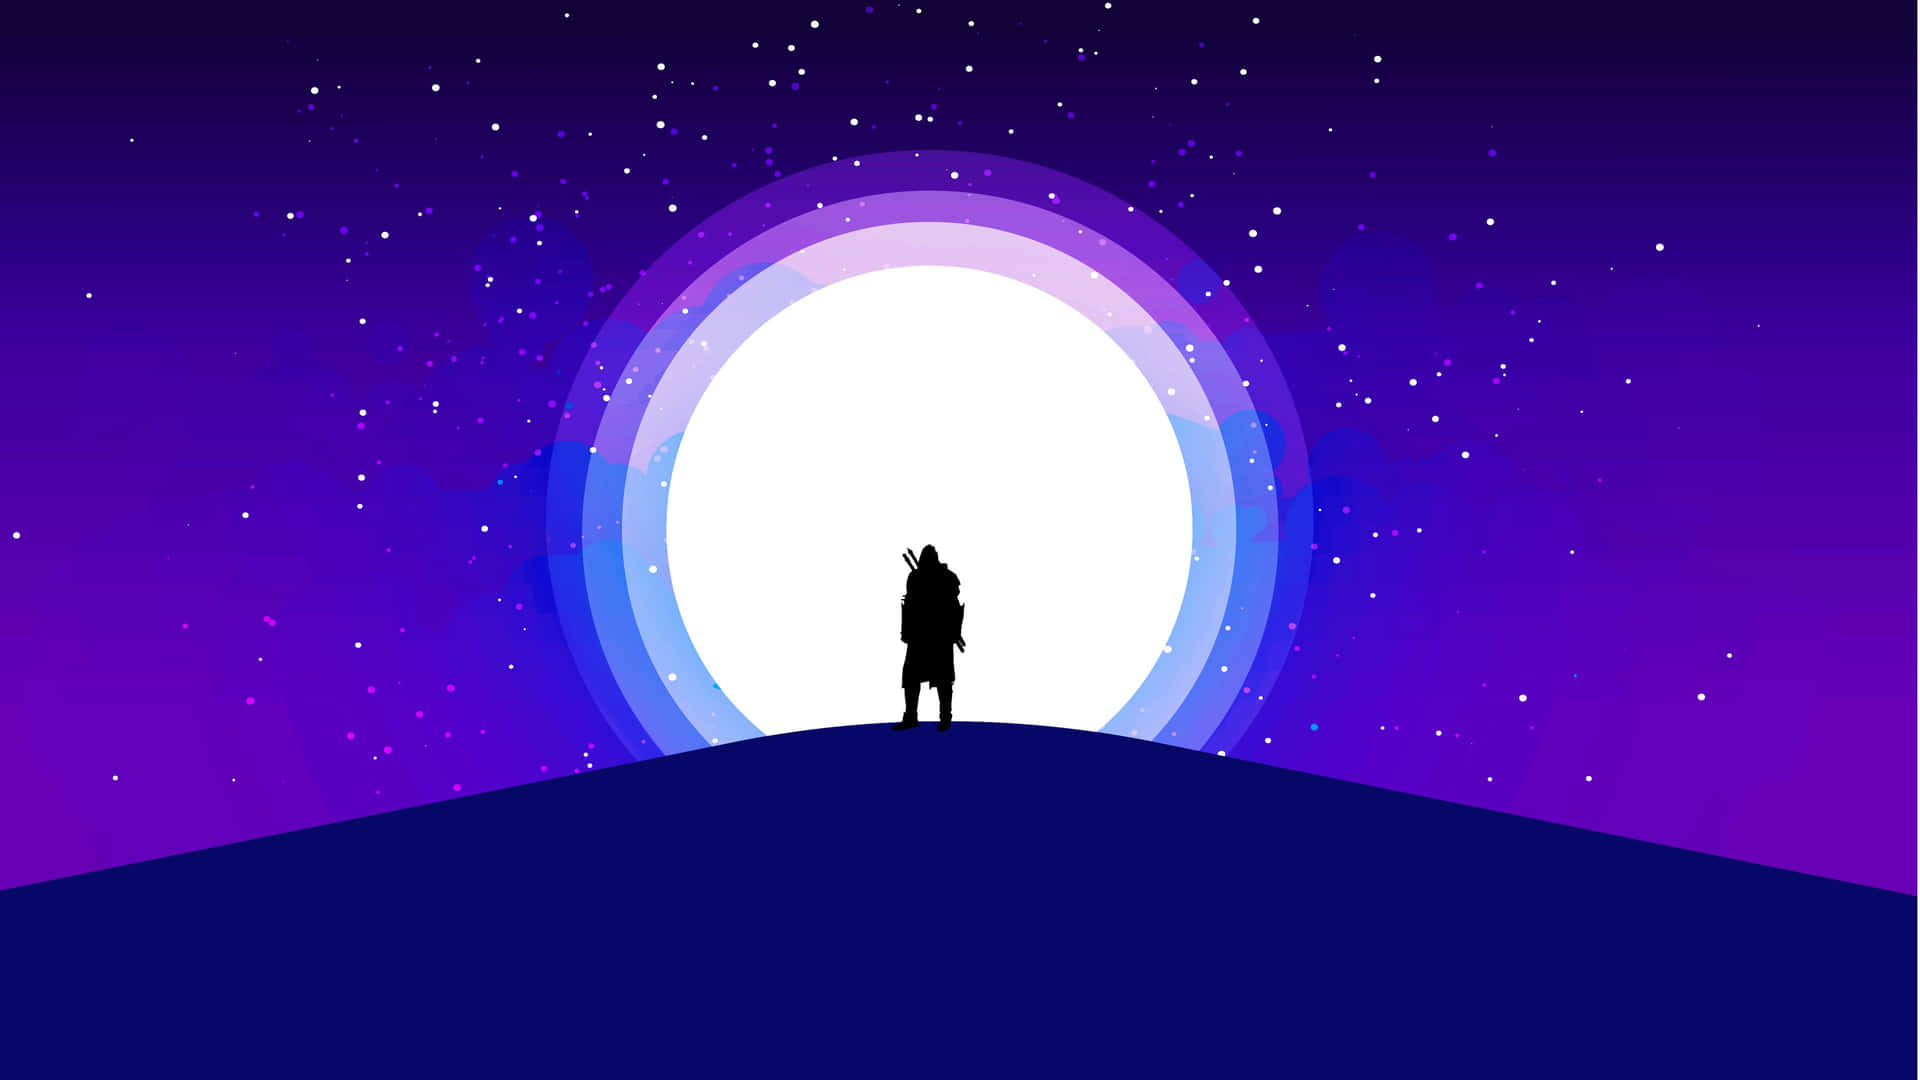 Eineperson Steht Auf Einem Hügel Mit Lila Licht Im Hintergrund.